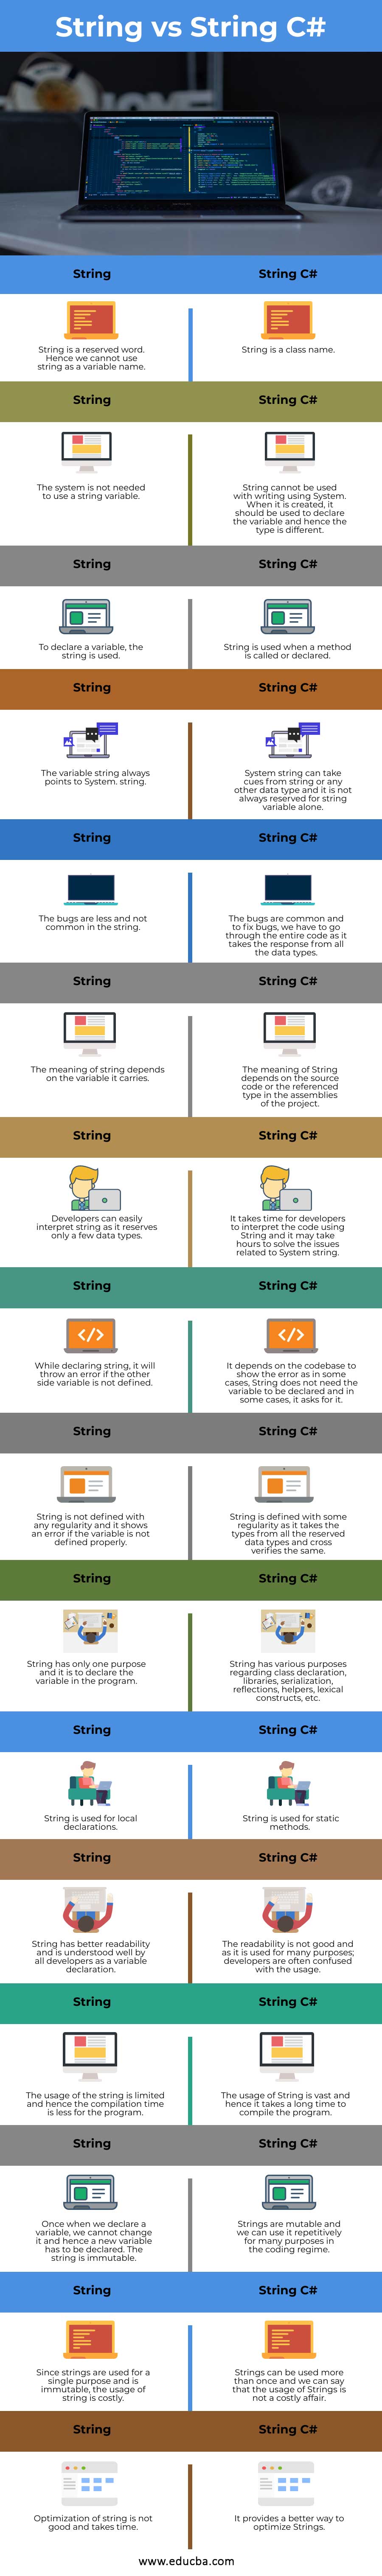 String-vs-String-C#-info